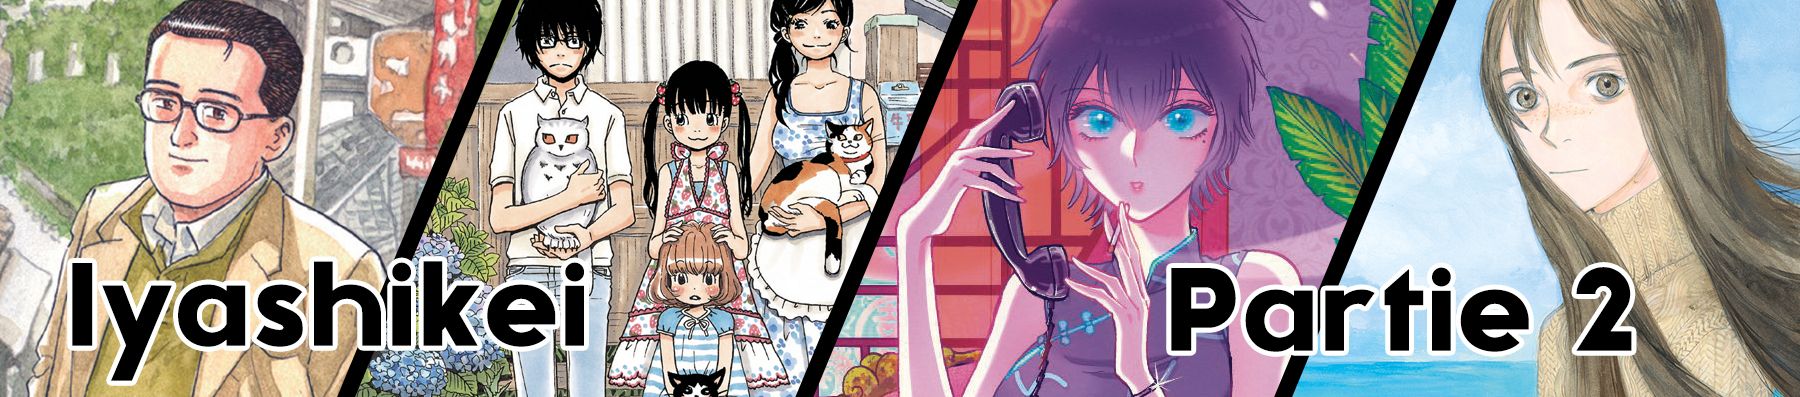 Dossier manga - Ces mangas qui font du bien – Partie 2